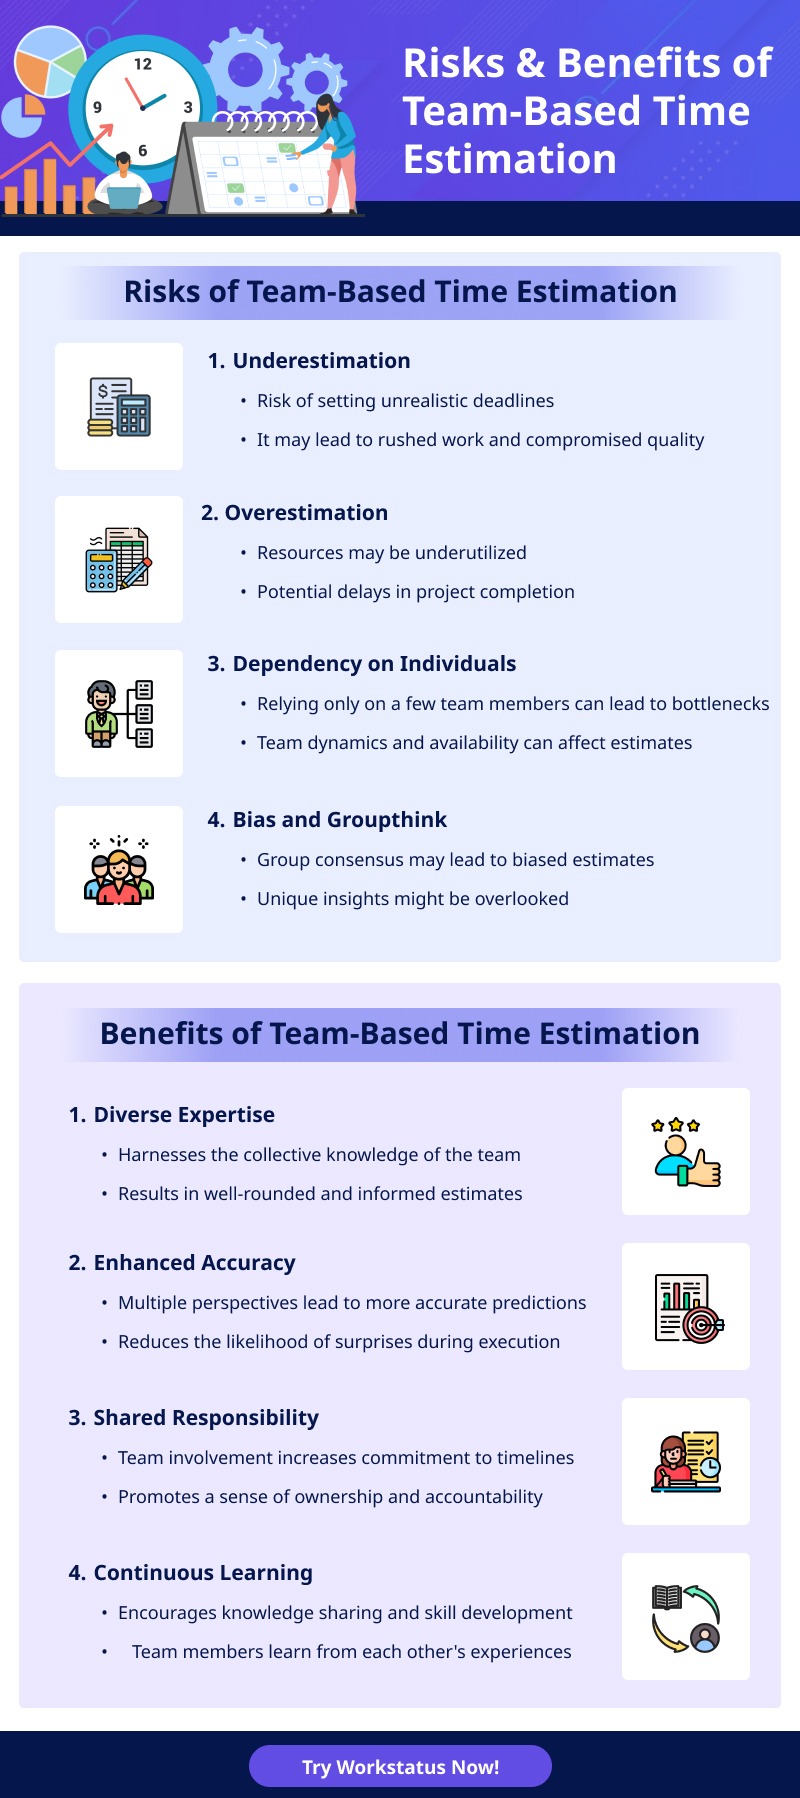 Risks & Benefits of Team-Based Time Estimation